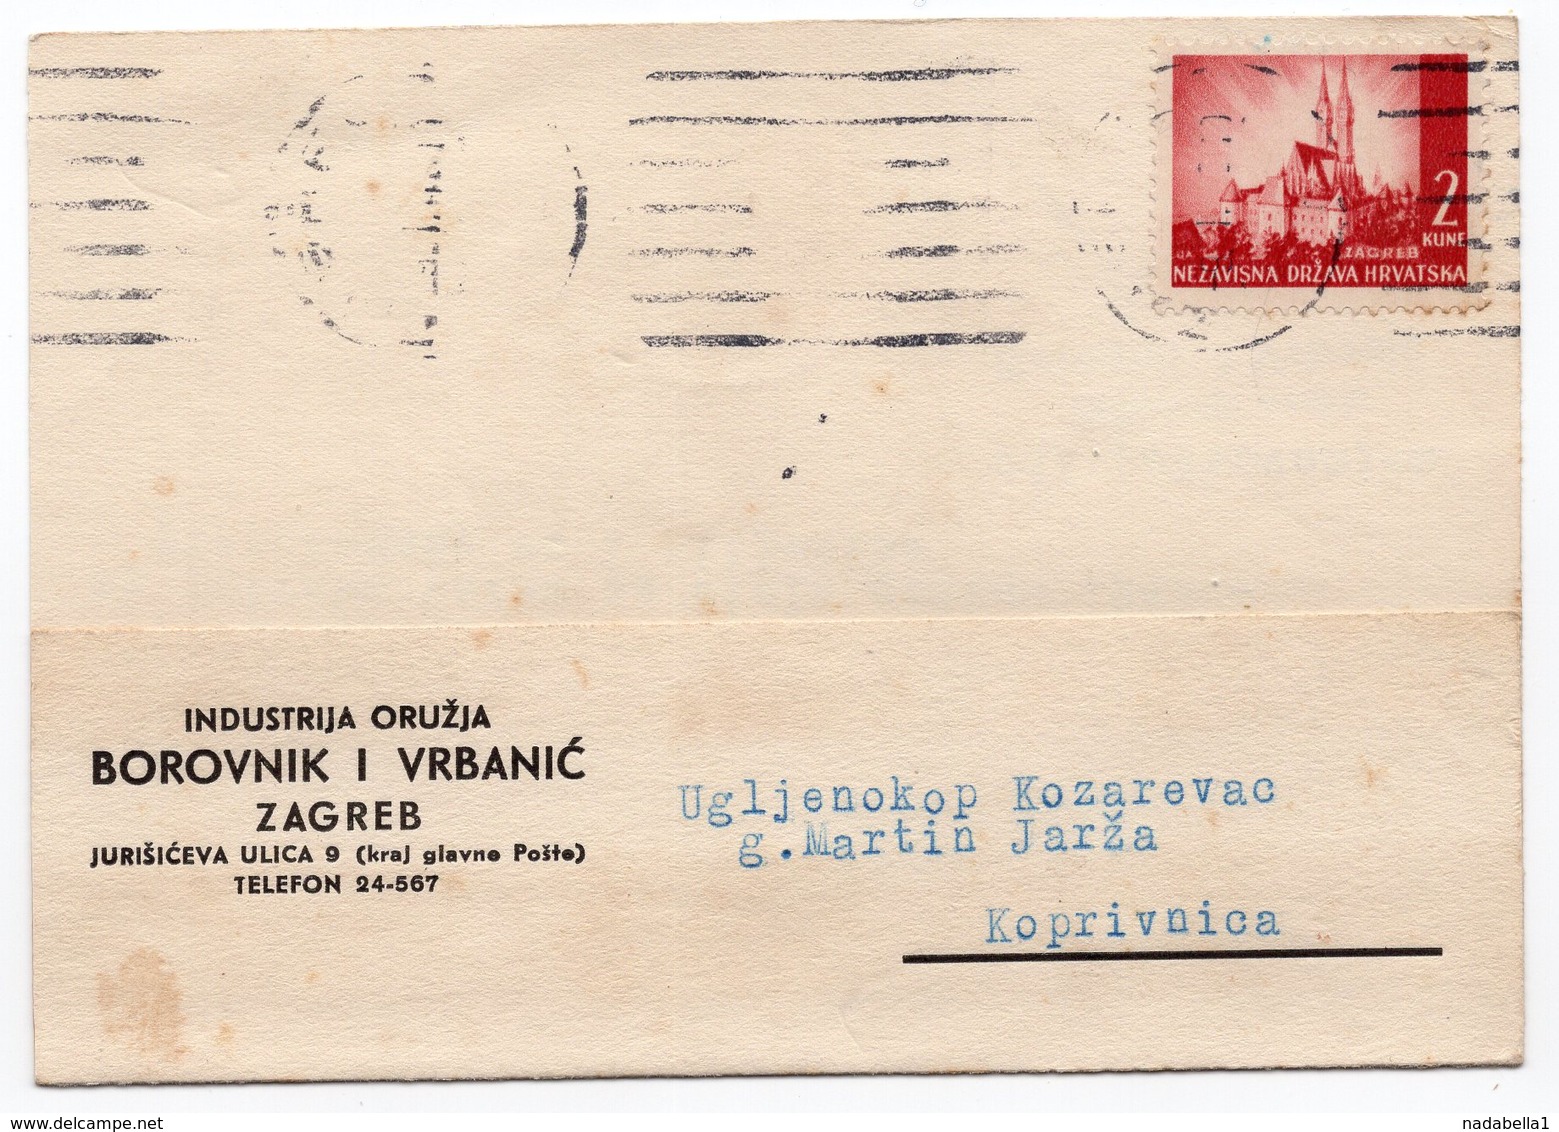 1943 CROATIA, NDH, ZAGREB, CORRESPONDENCE CARD, BOROVNIK I VRBANIC - Croatia